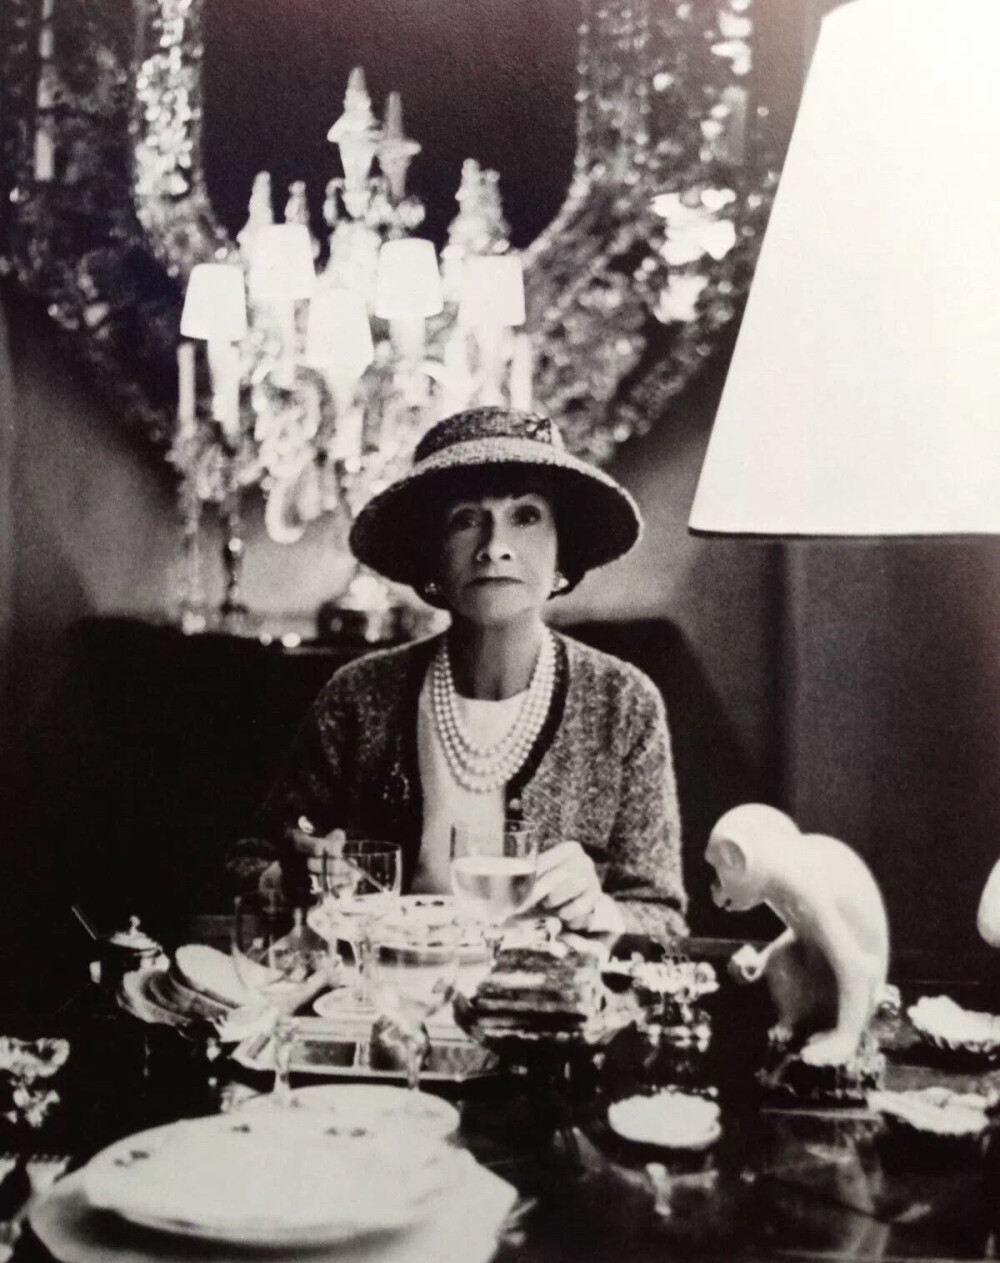 Antoine的茶室很快成了巴黎右岸社会名流、贵妇丽人们趋之若鹜的社交场所。这些名人中，就有时尚先锋Coco Chanel女士。